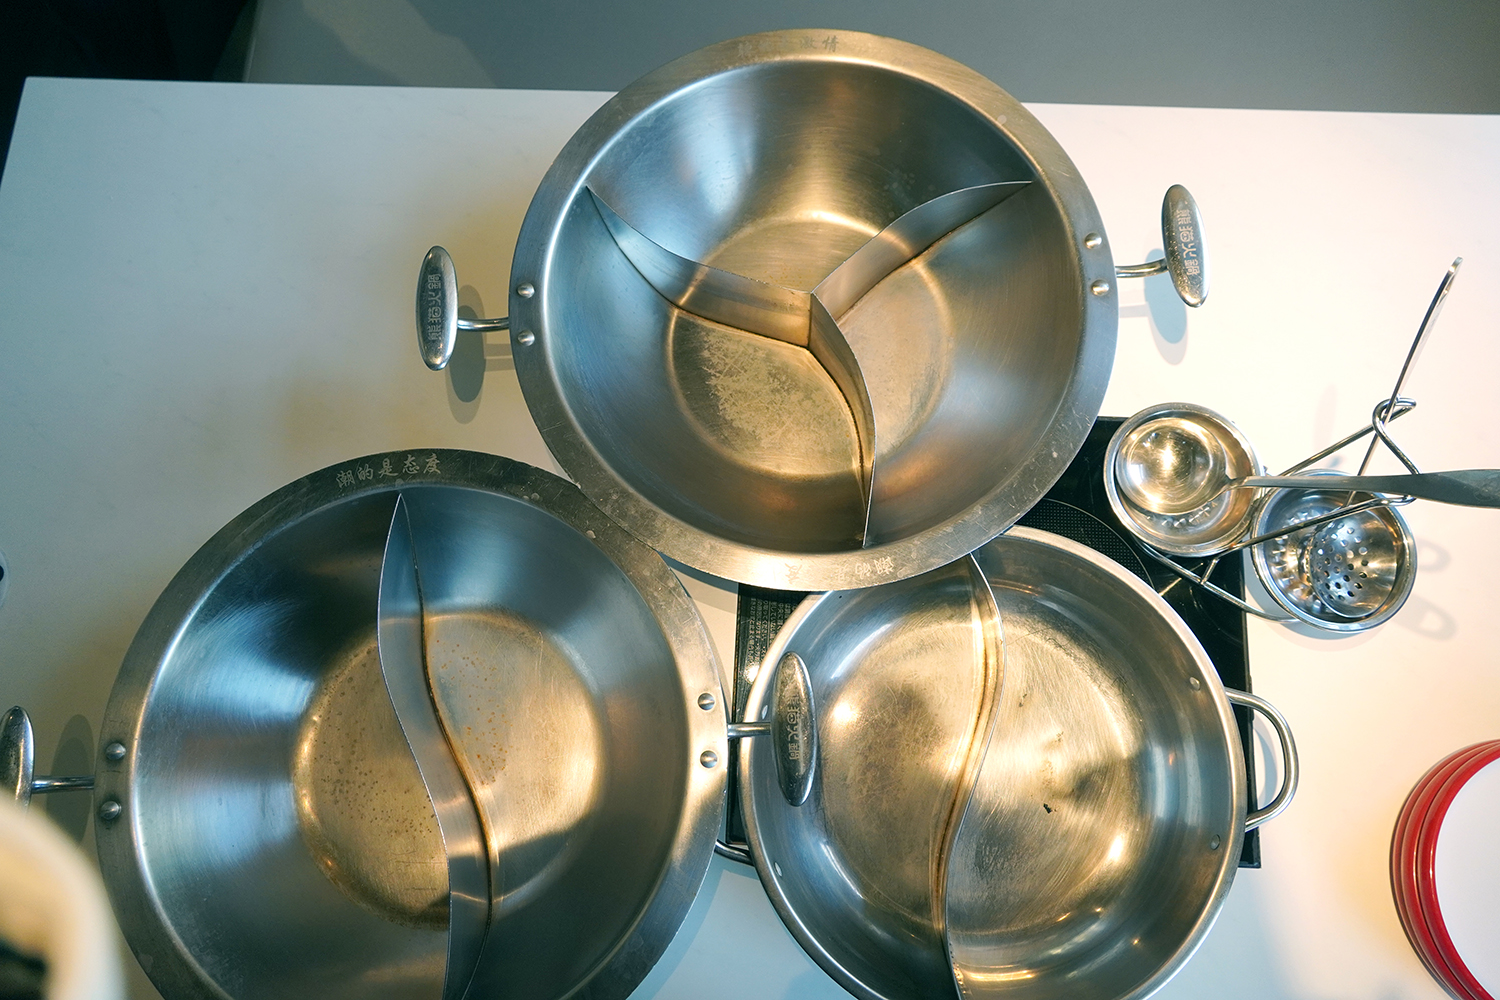 右下が1〜2人用の鍋で、それ以外は3〜4人用。鍋は2種用、3種用に仕切られている。